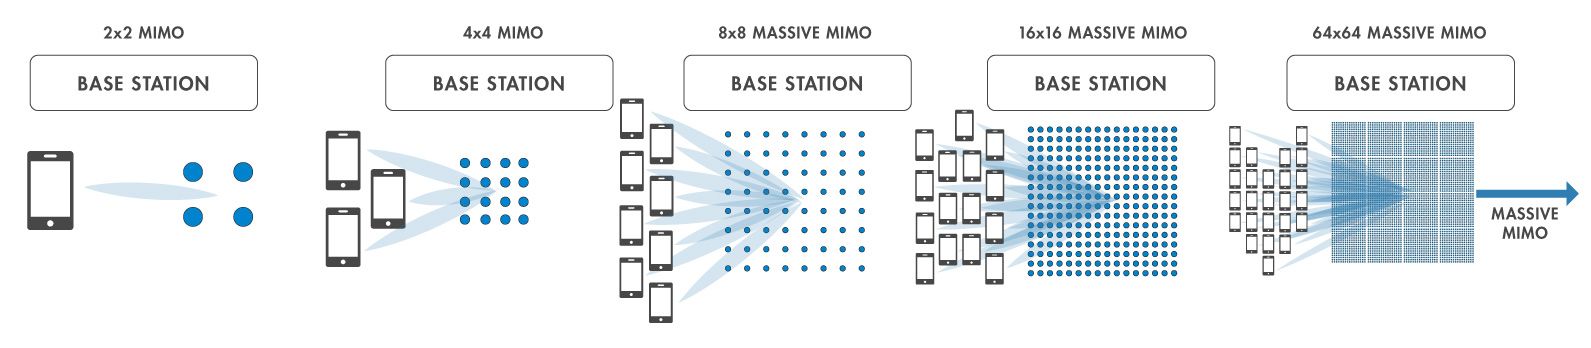 Future of MUMIMO Technology